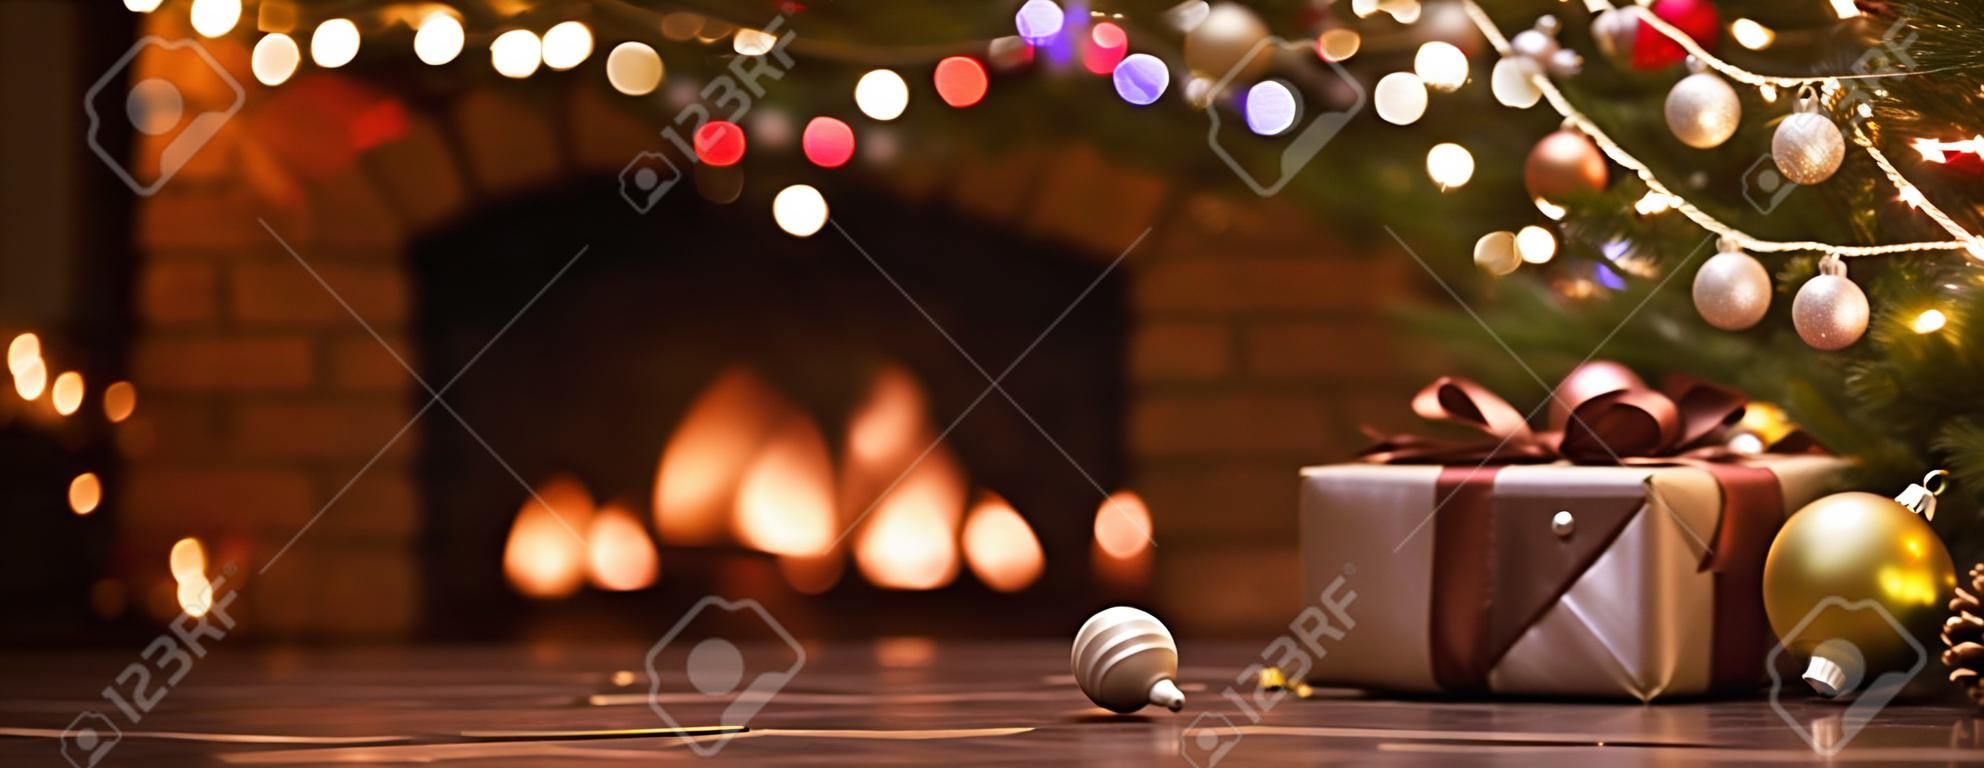 ライトのある暖炉の近くの装飾が施されたクリスマスツリー